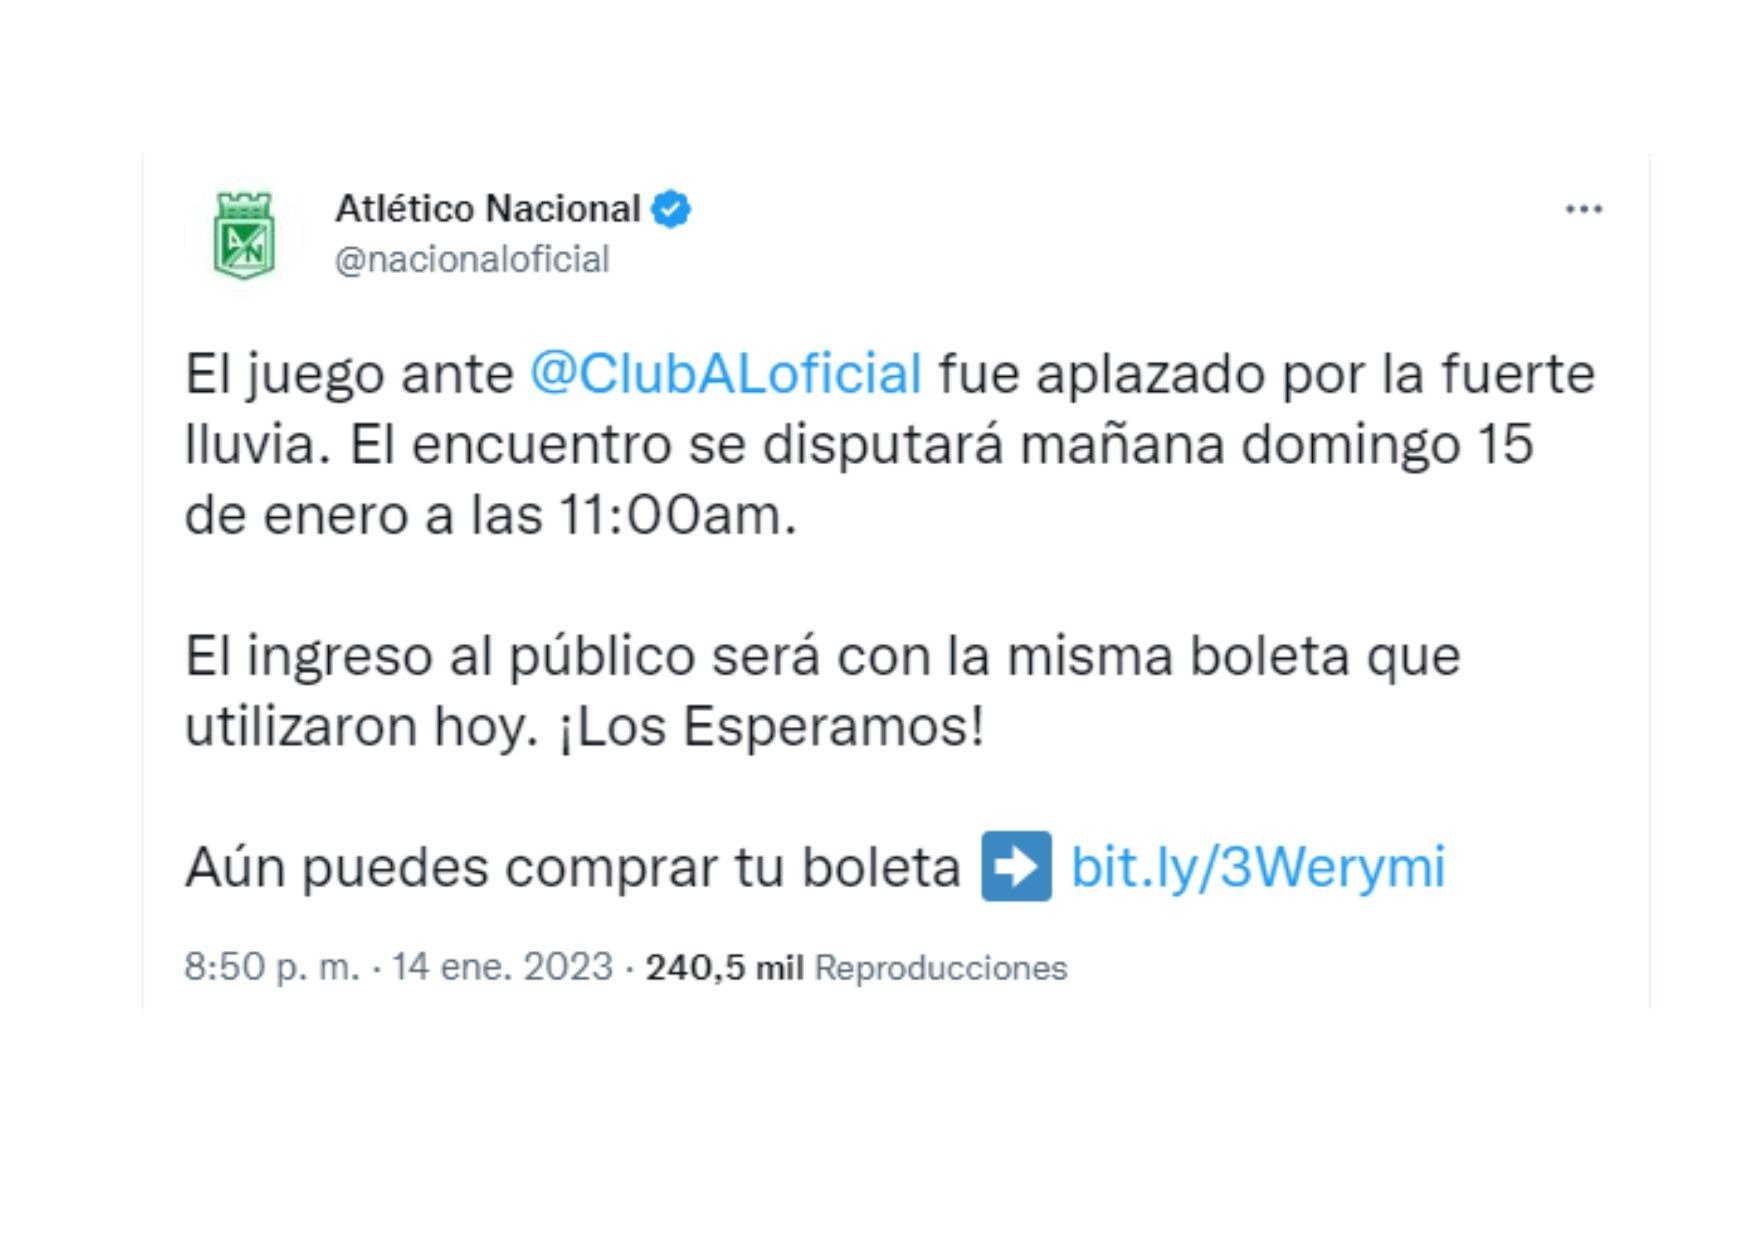 Tweet del Atlético Nacional